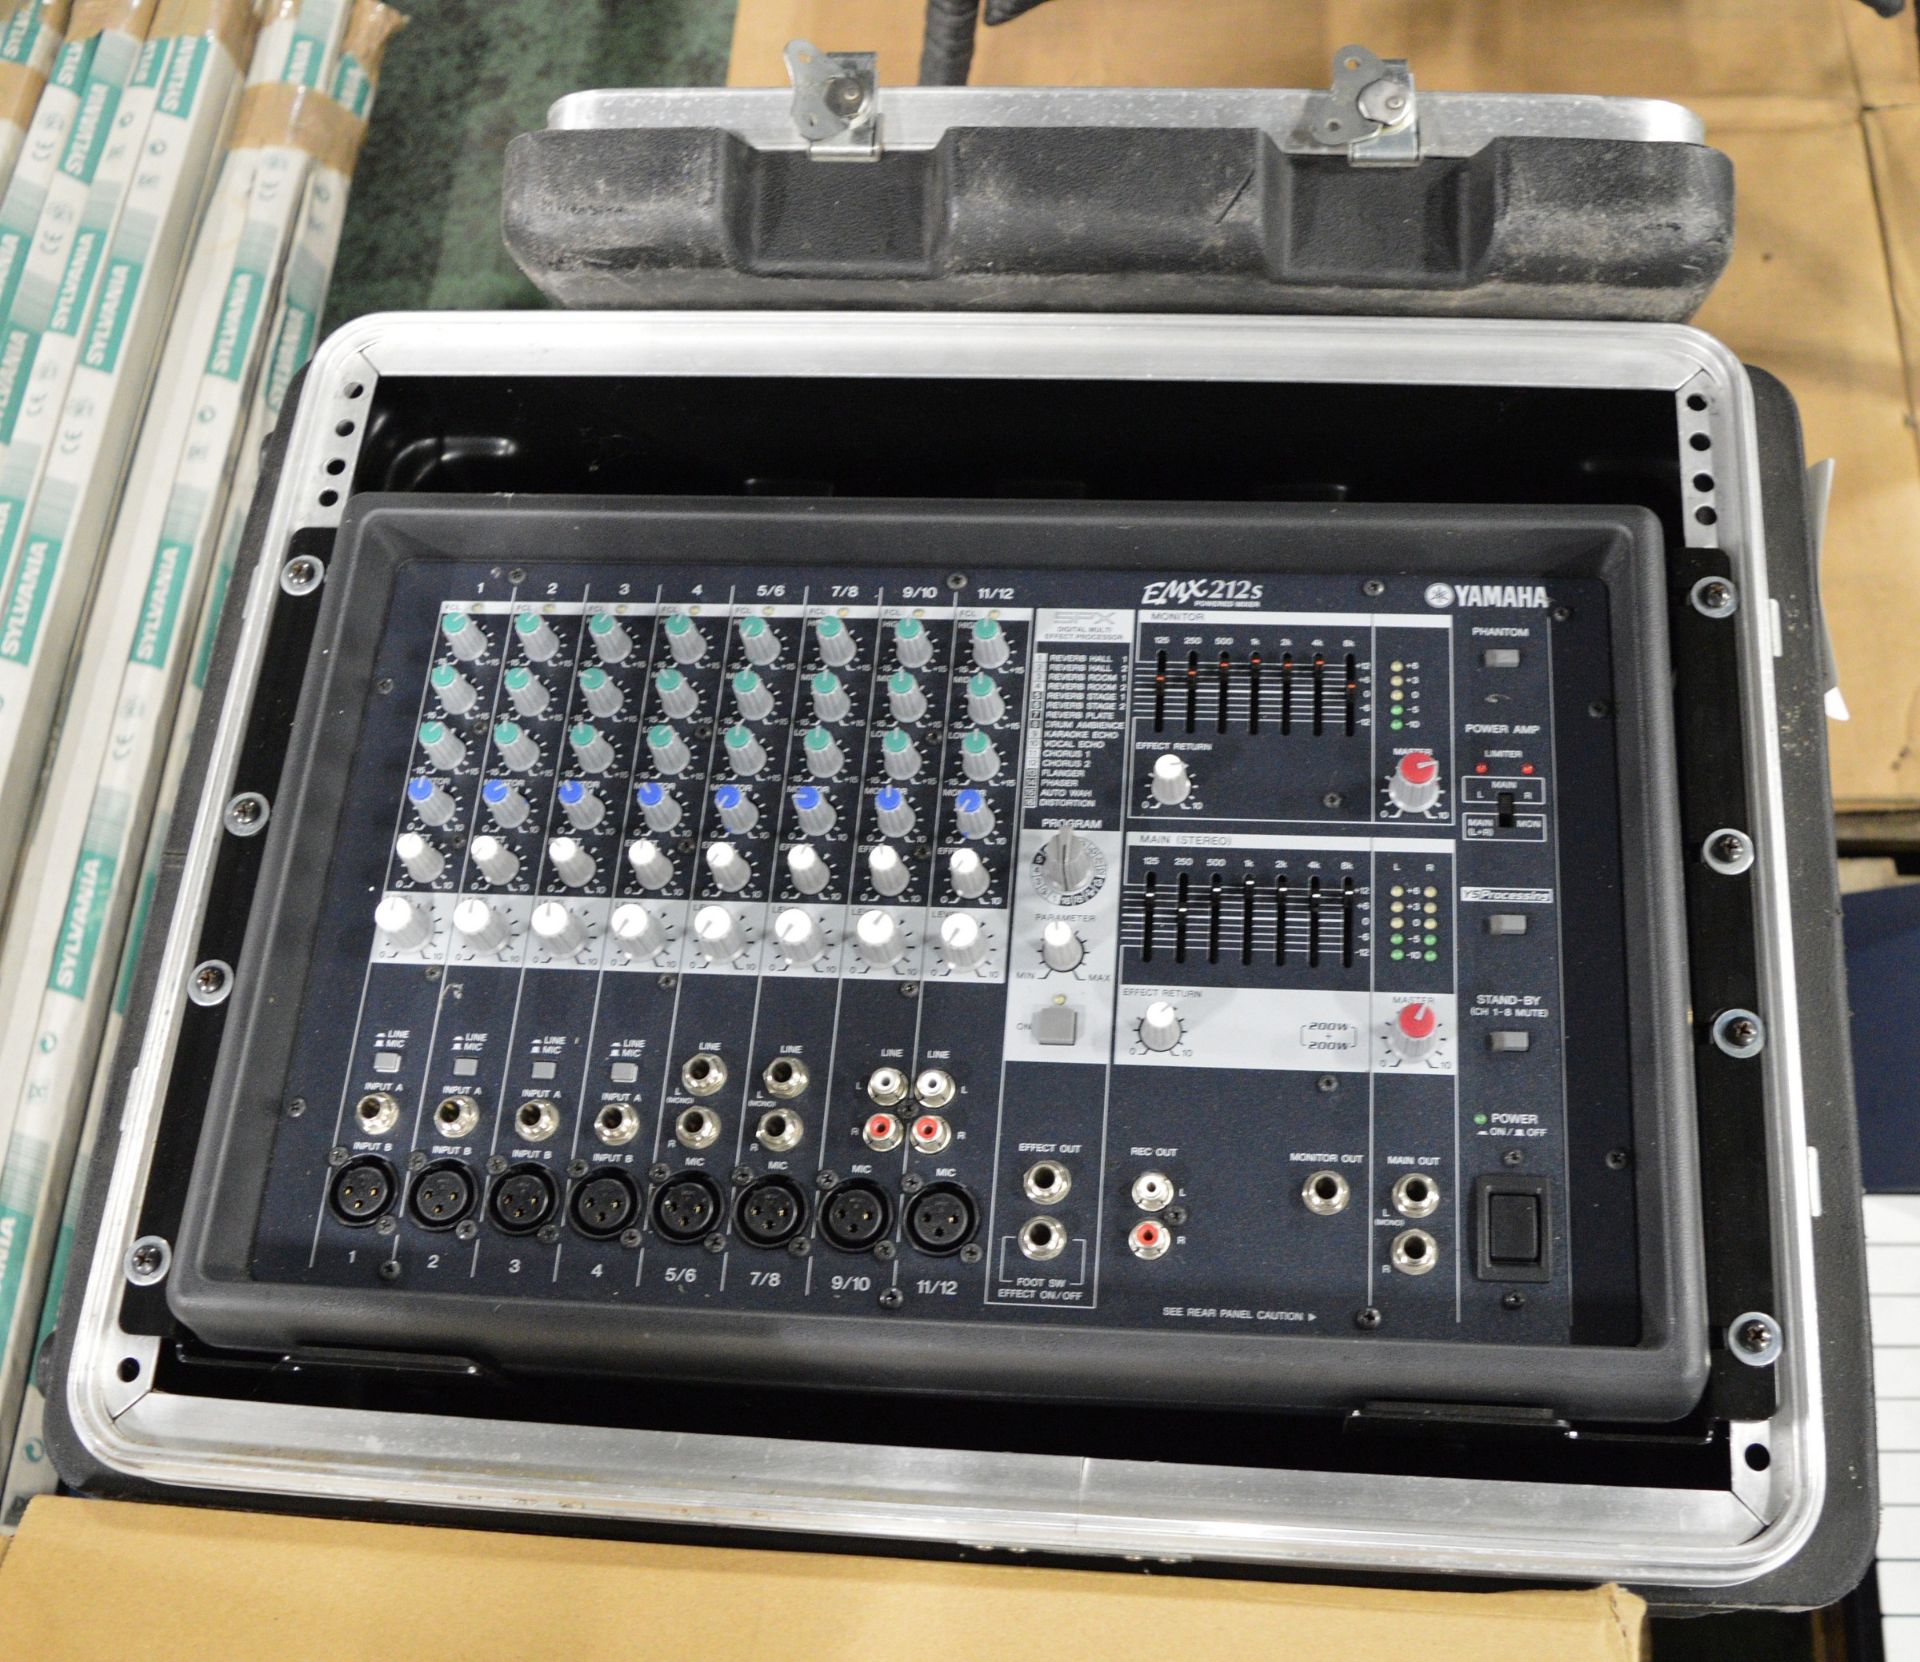 Yamaha EMX 212s Mixing panel in transit case